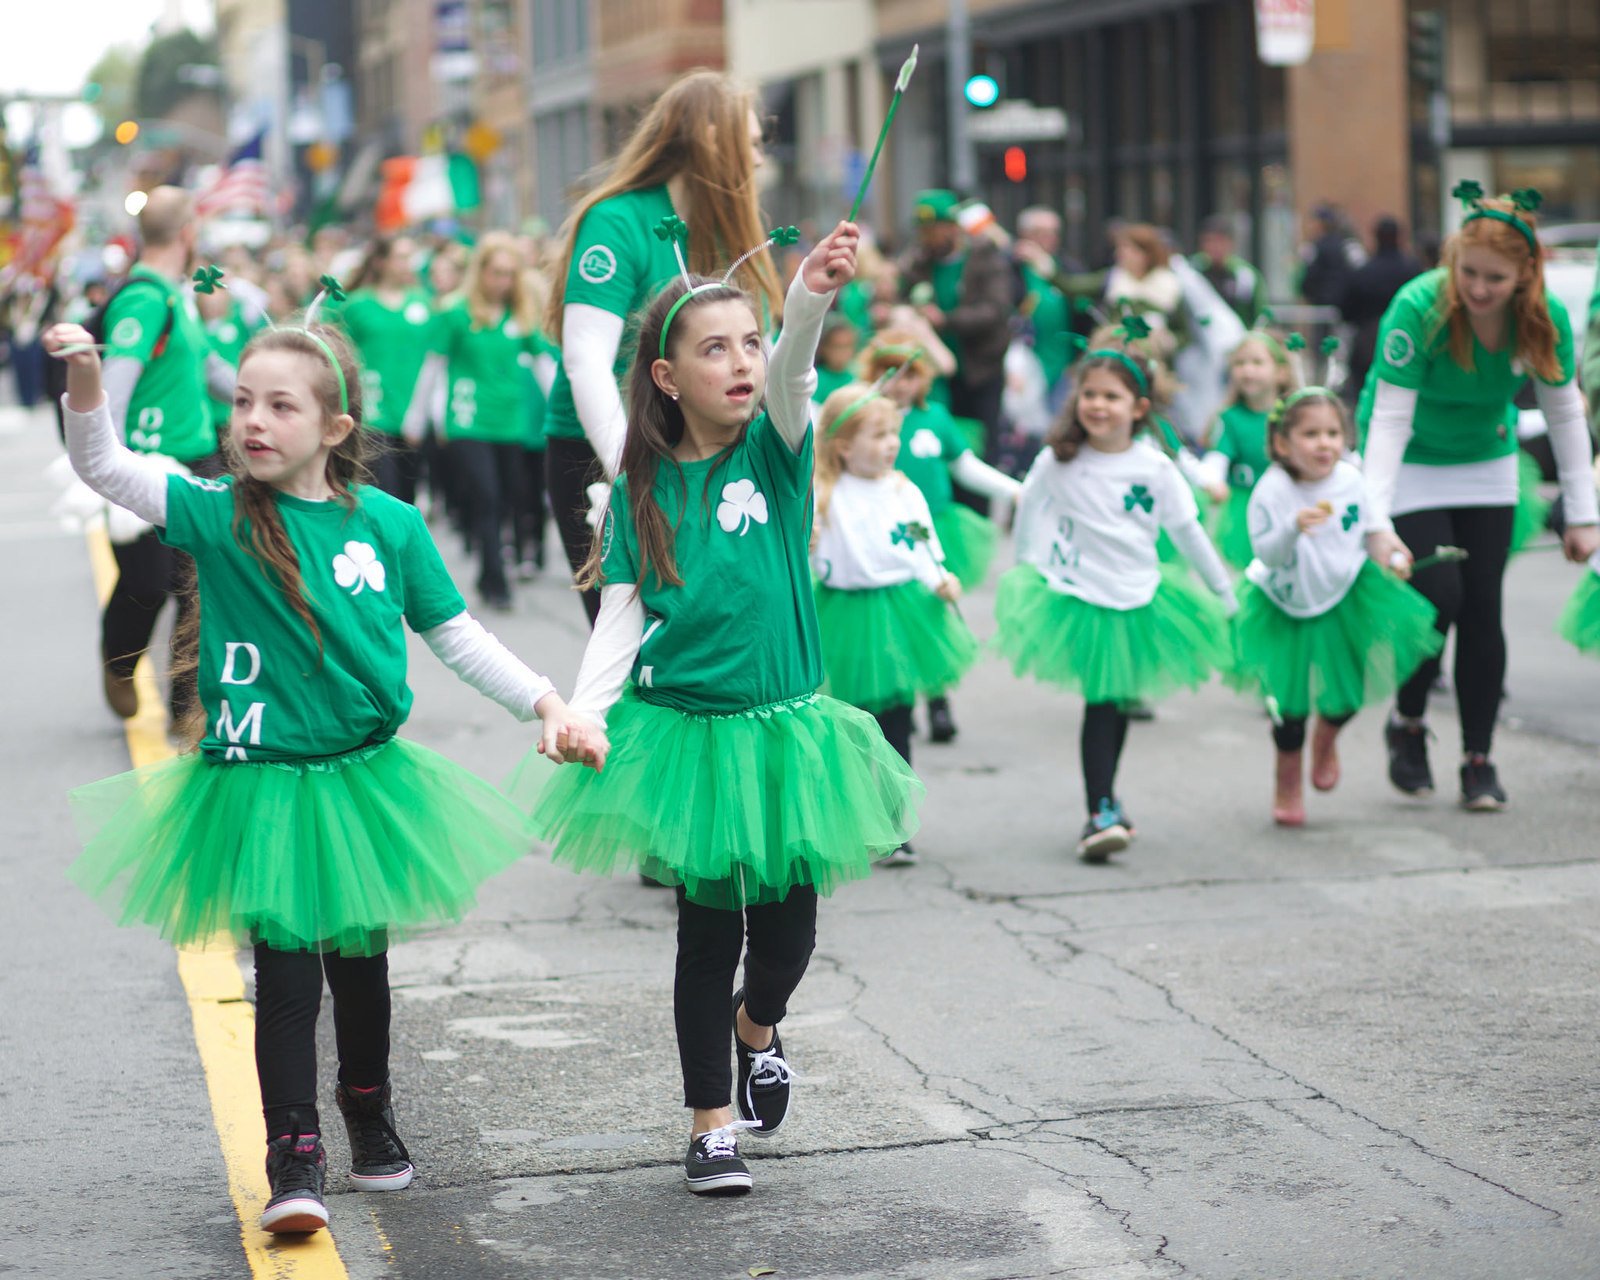 St. Patricks Day Parade & Festival in San Francisco, California Kid